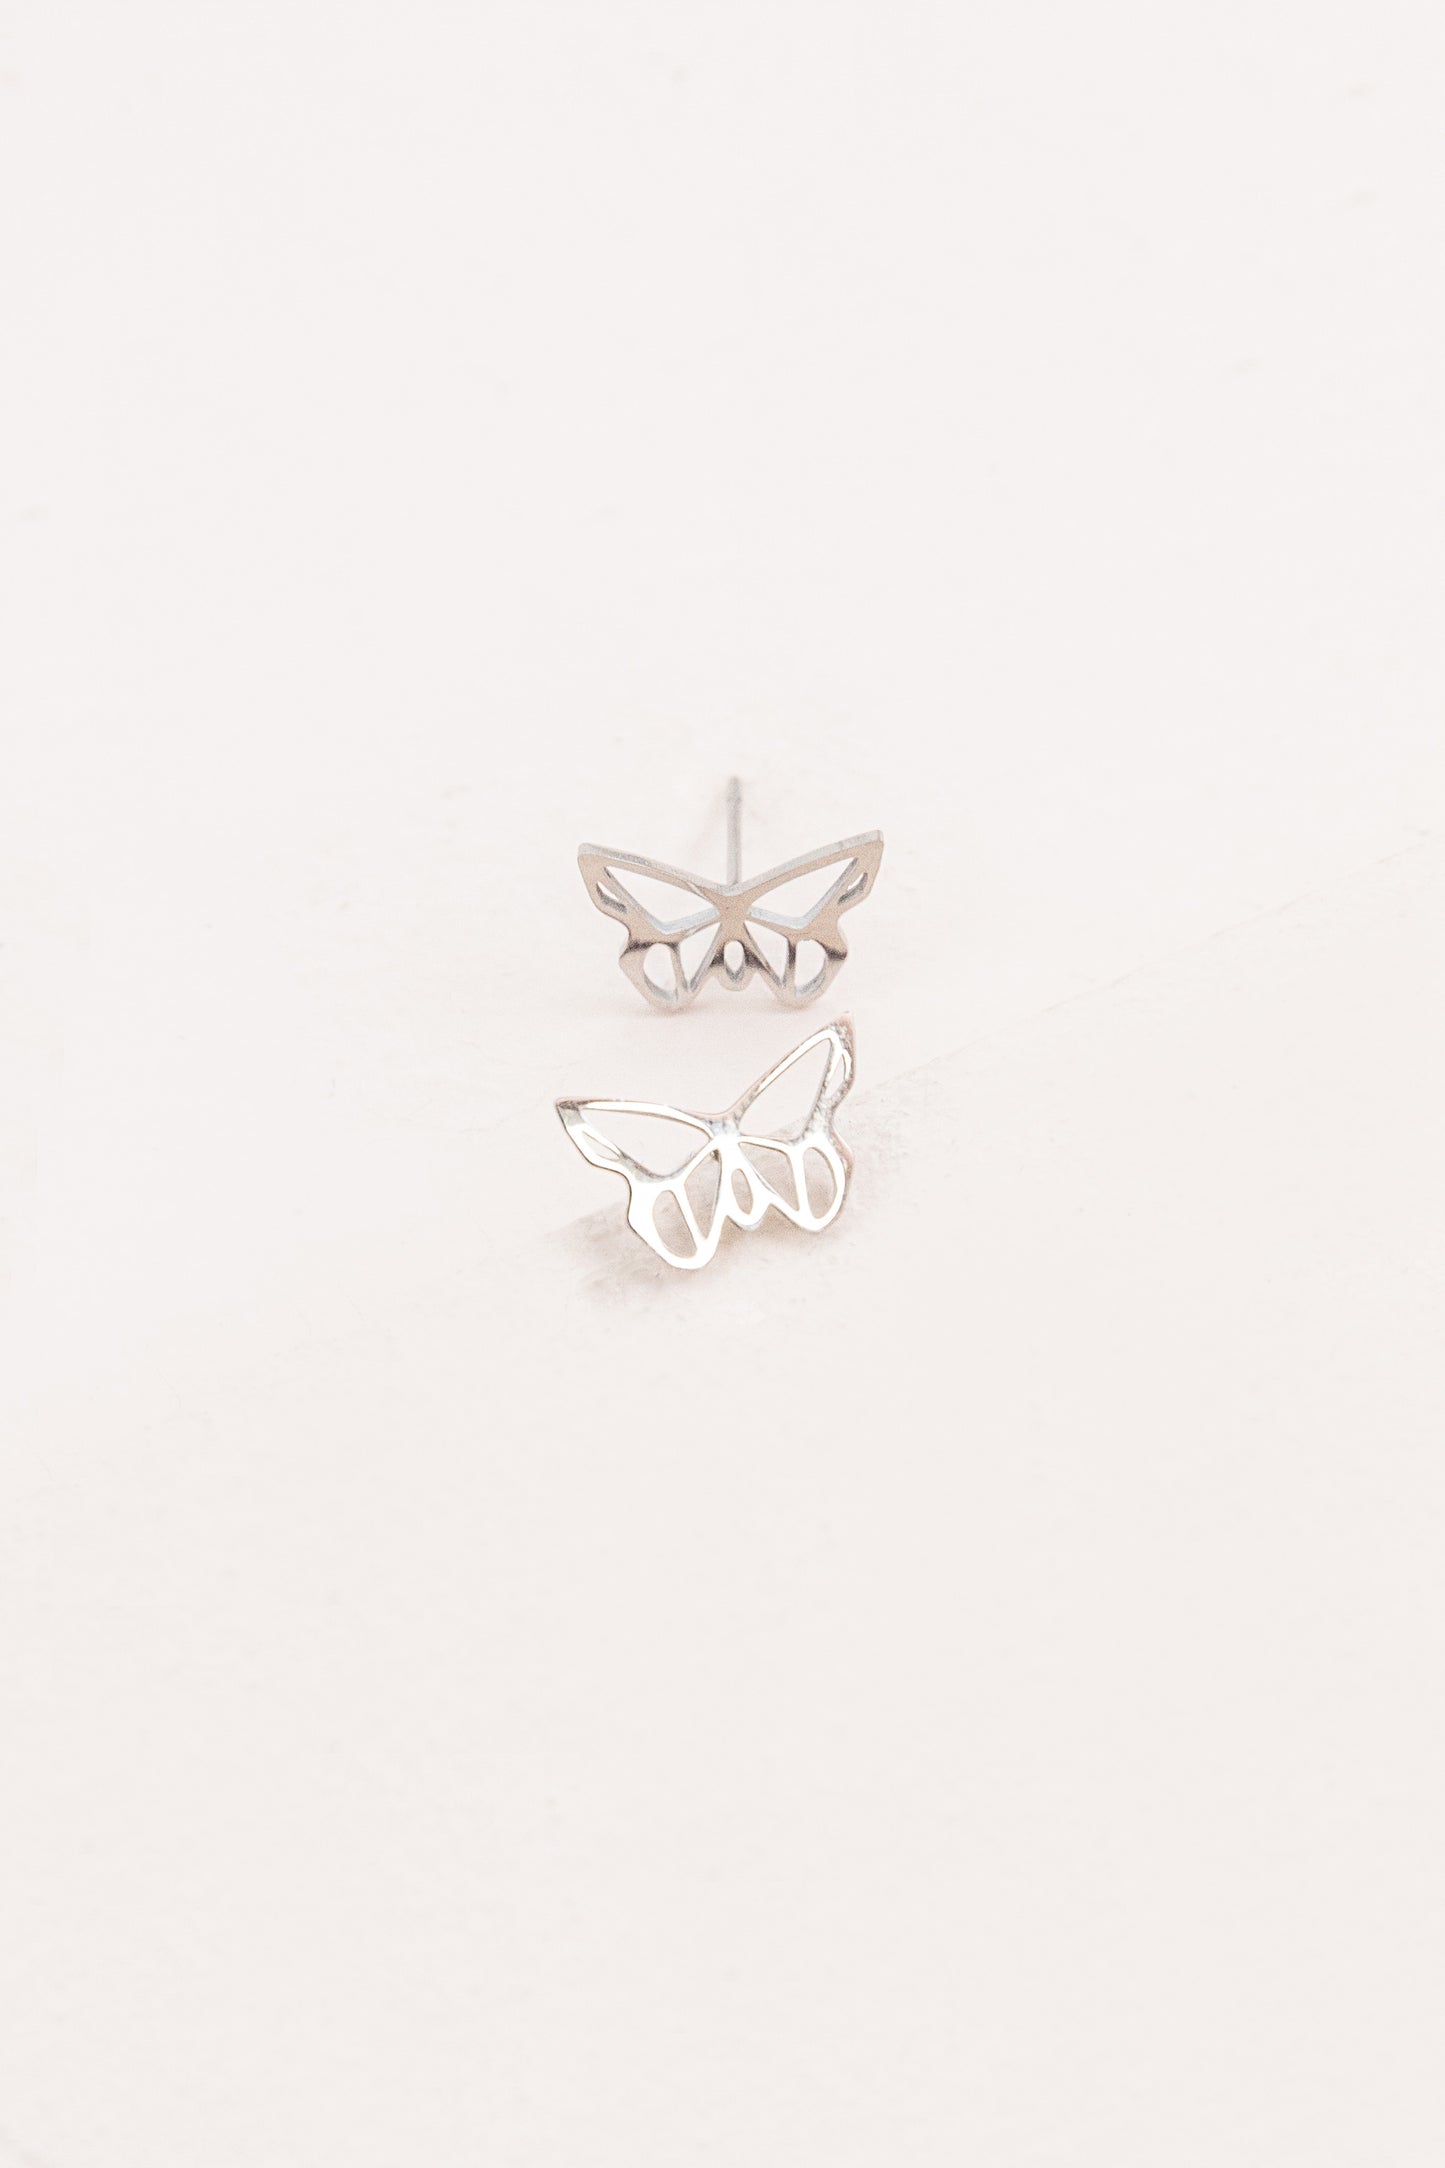 Butterfly Outline Earrings (14K)